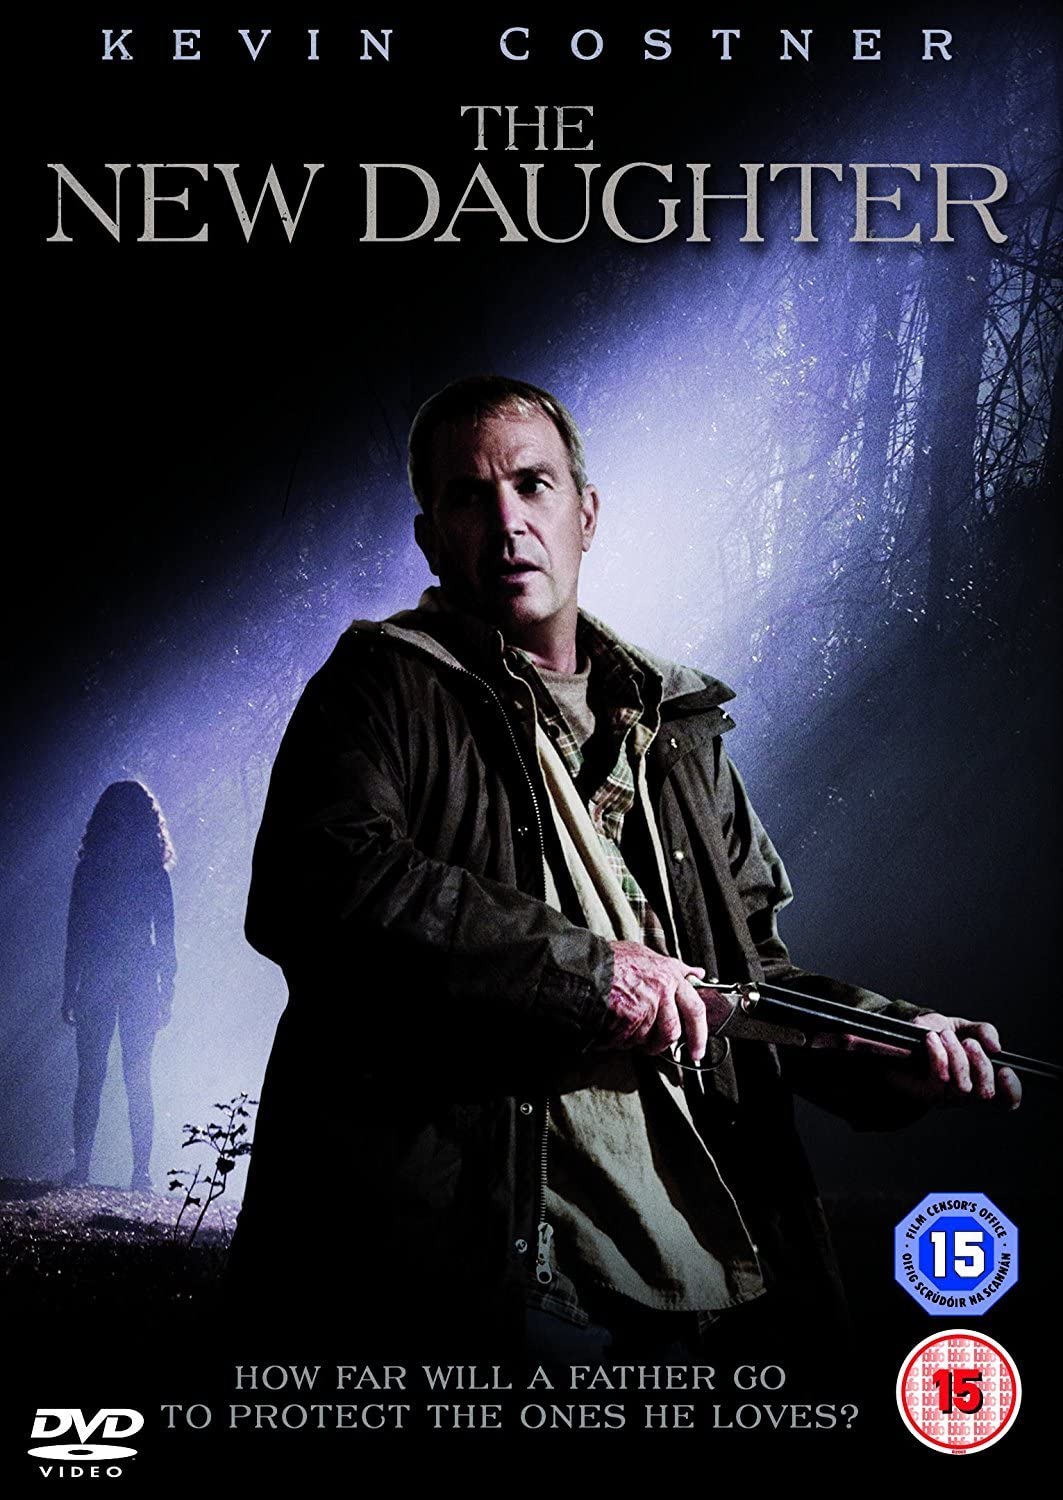 The New Daughter - Horror/Thriller [DVD]